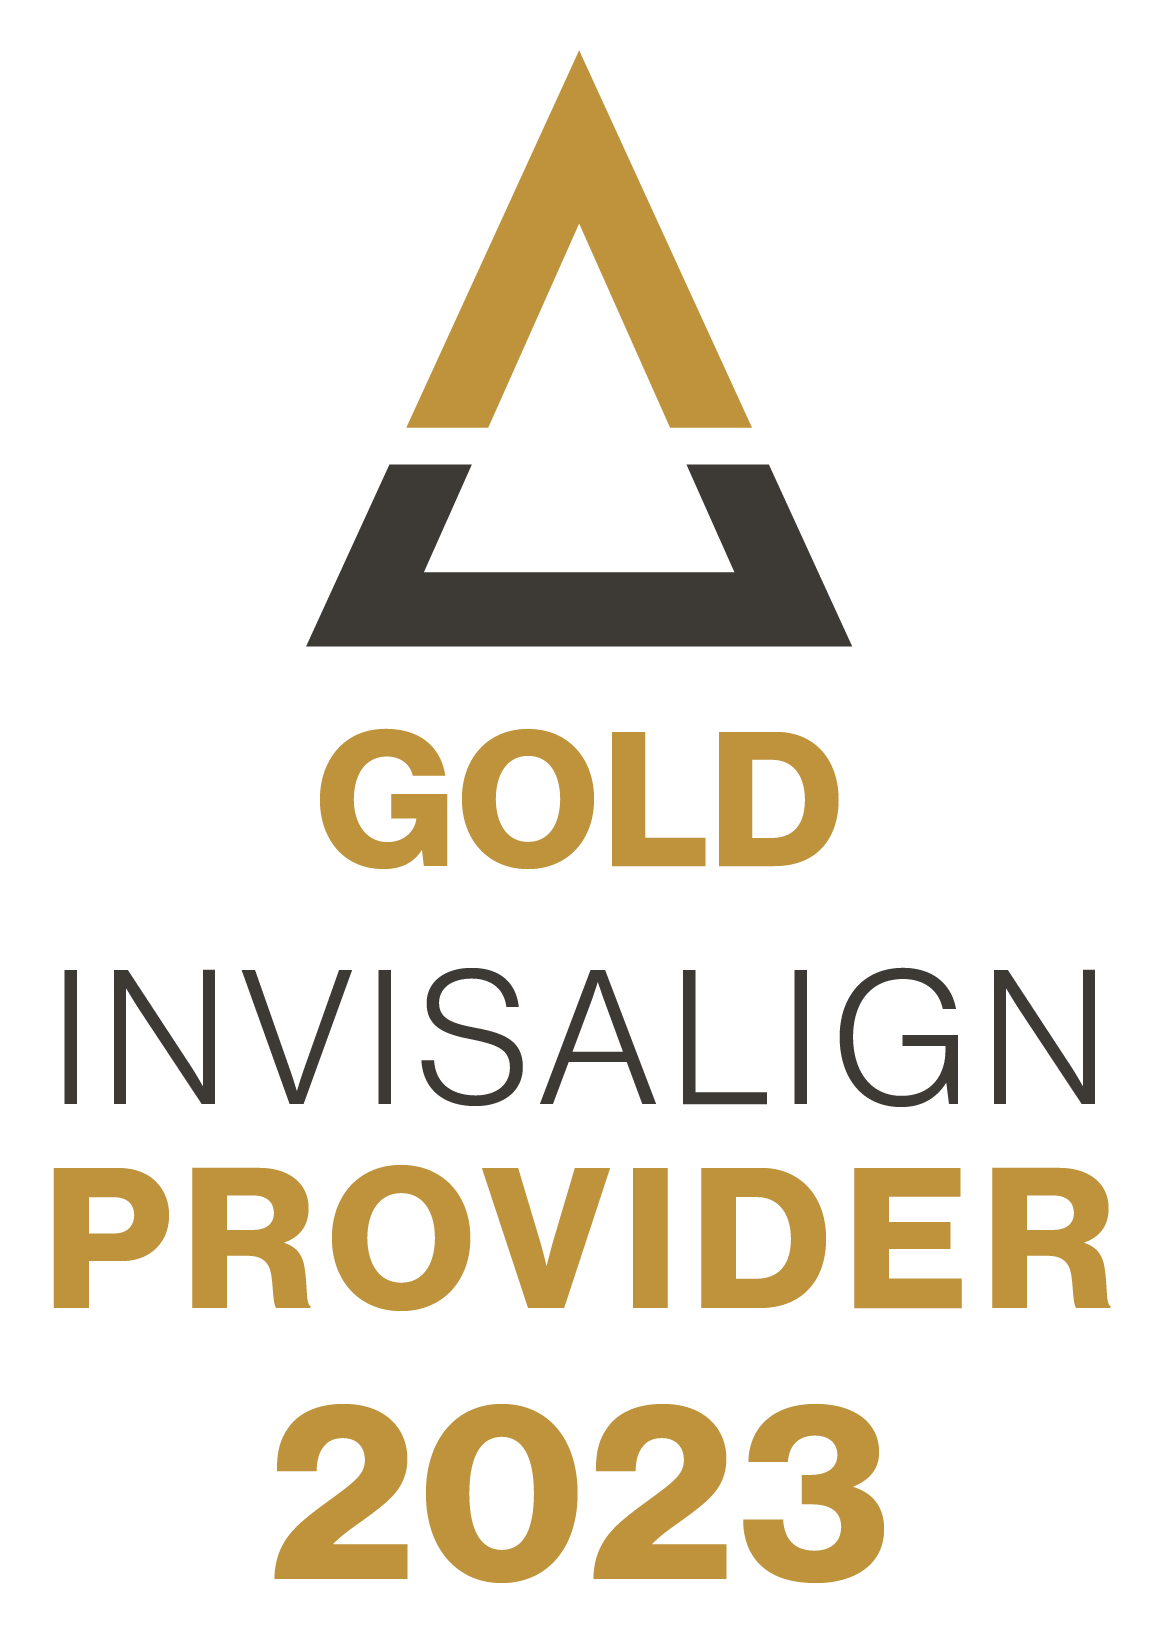 A gold invisalign provider logo for 2023.